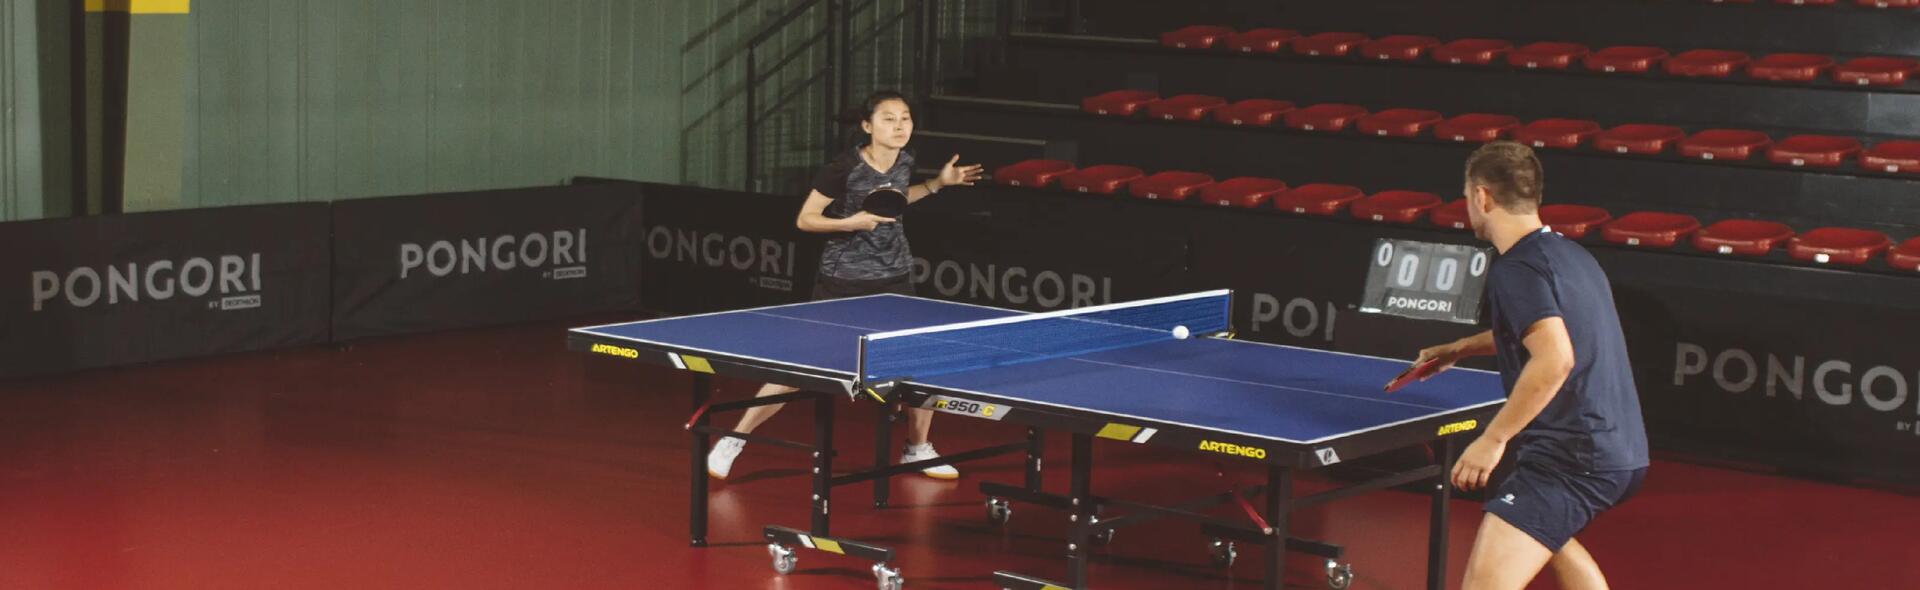 tennis de table free ping pong académique cours jeu match